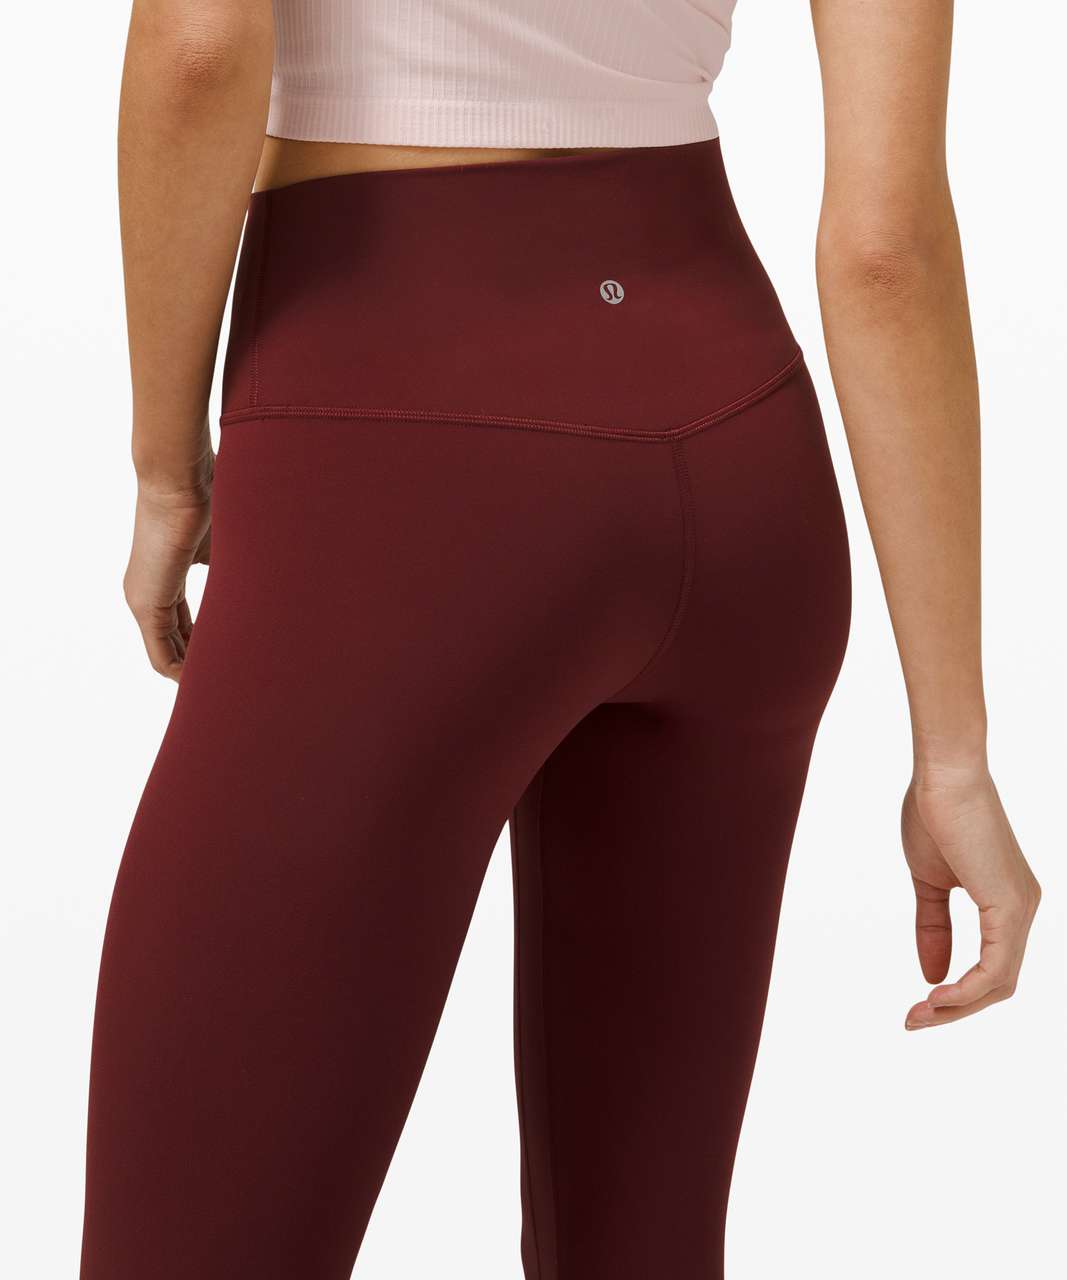 Lululemon align SHR 28 leggings size 2 garnet Red - $84 - From Ava